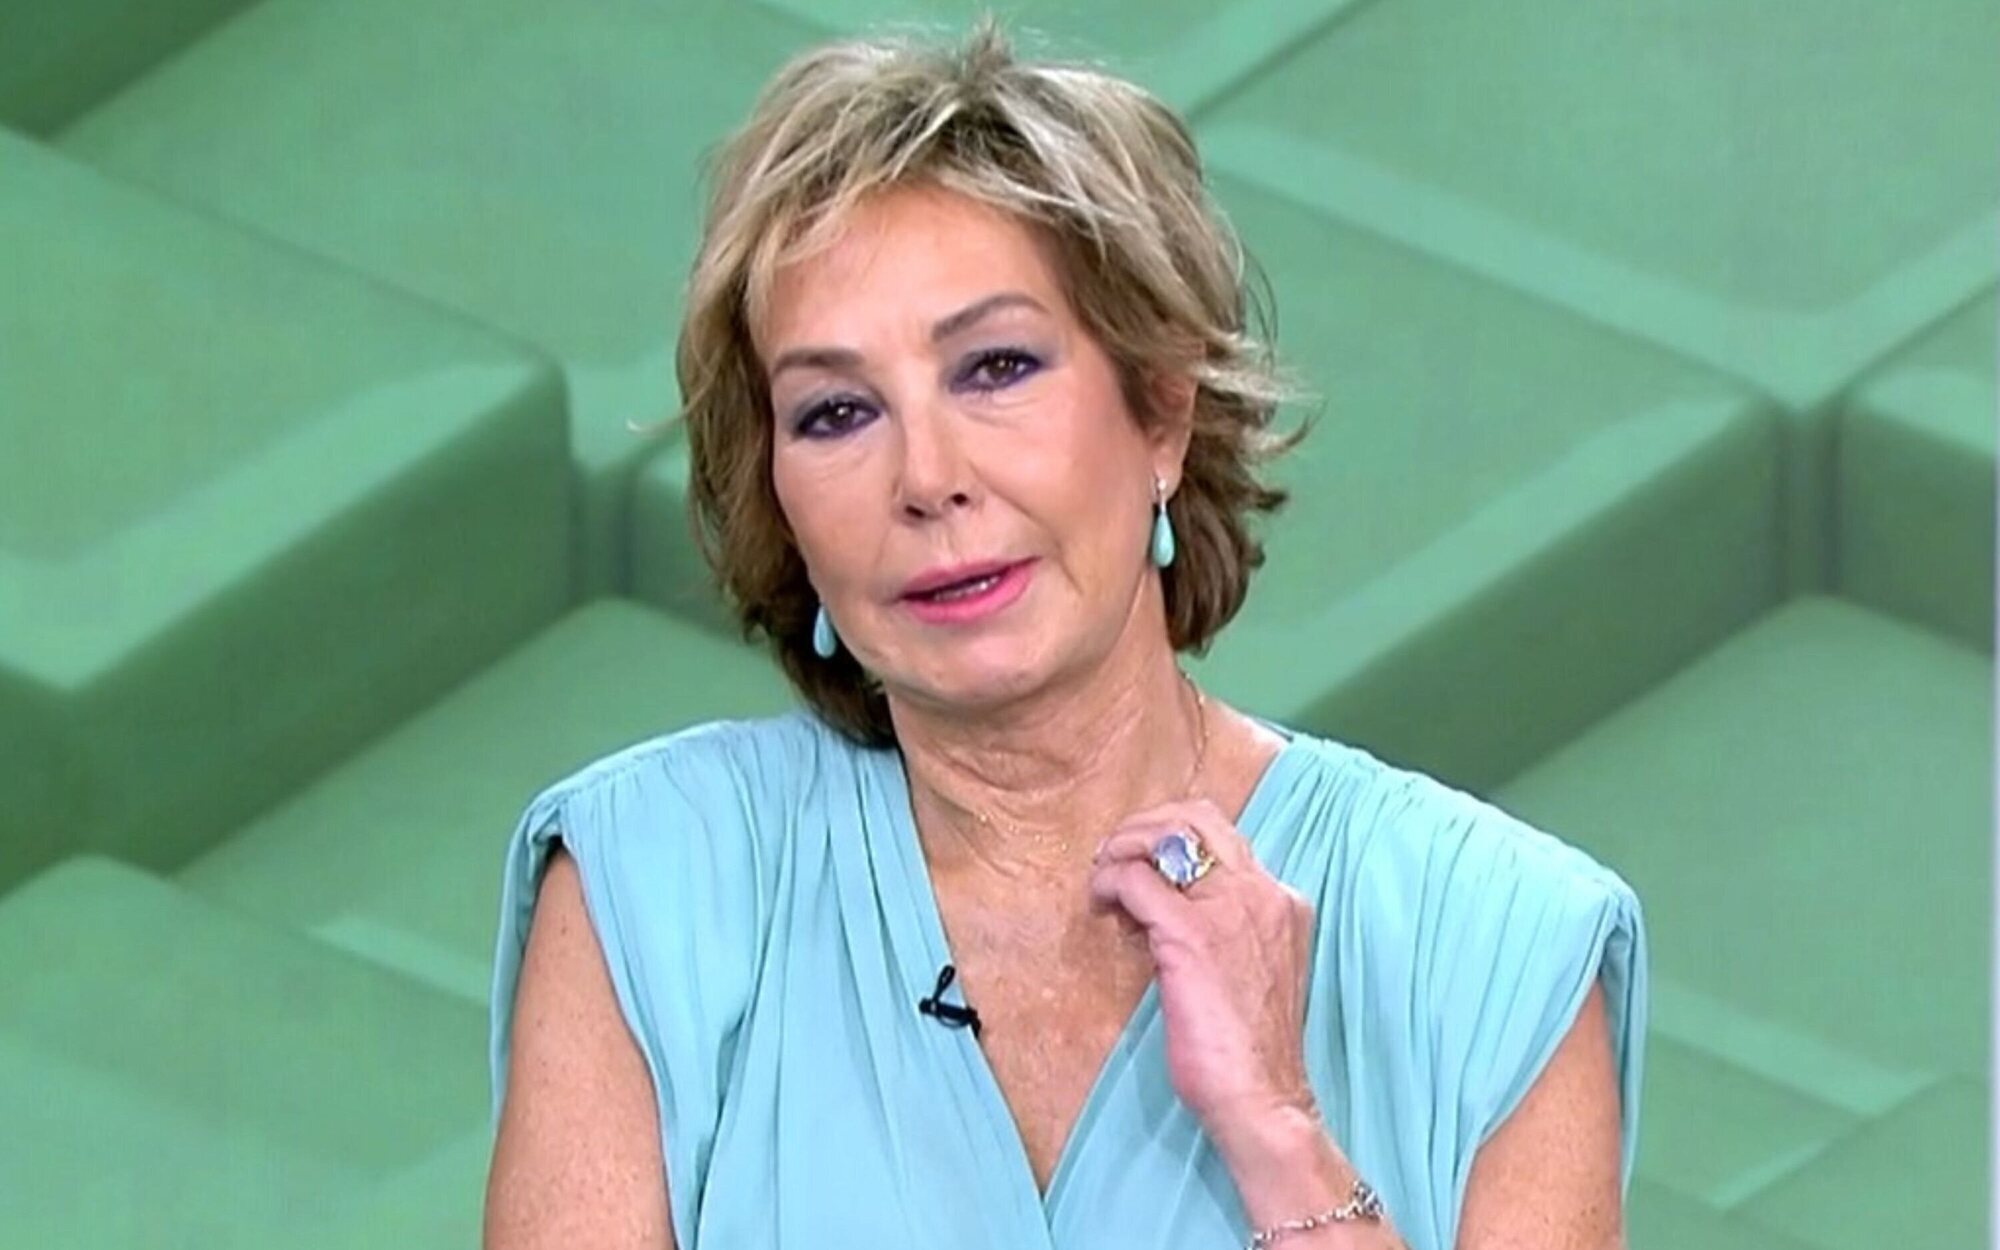 Ana Rosa Quintana rompe a llorar al despedirse de las mañanas de Telecinco: "He renacido"